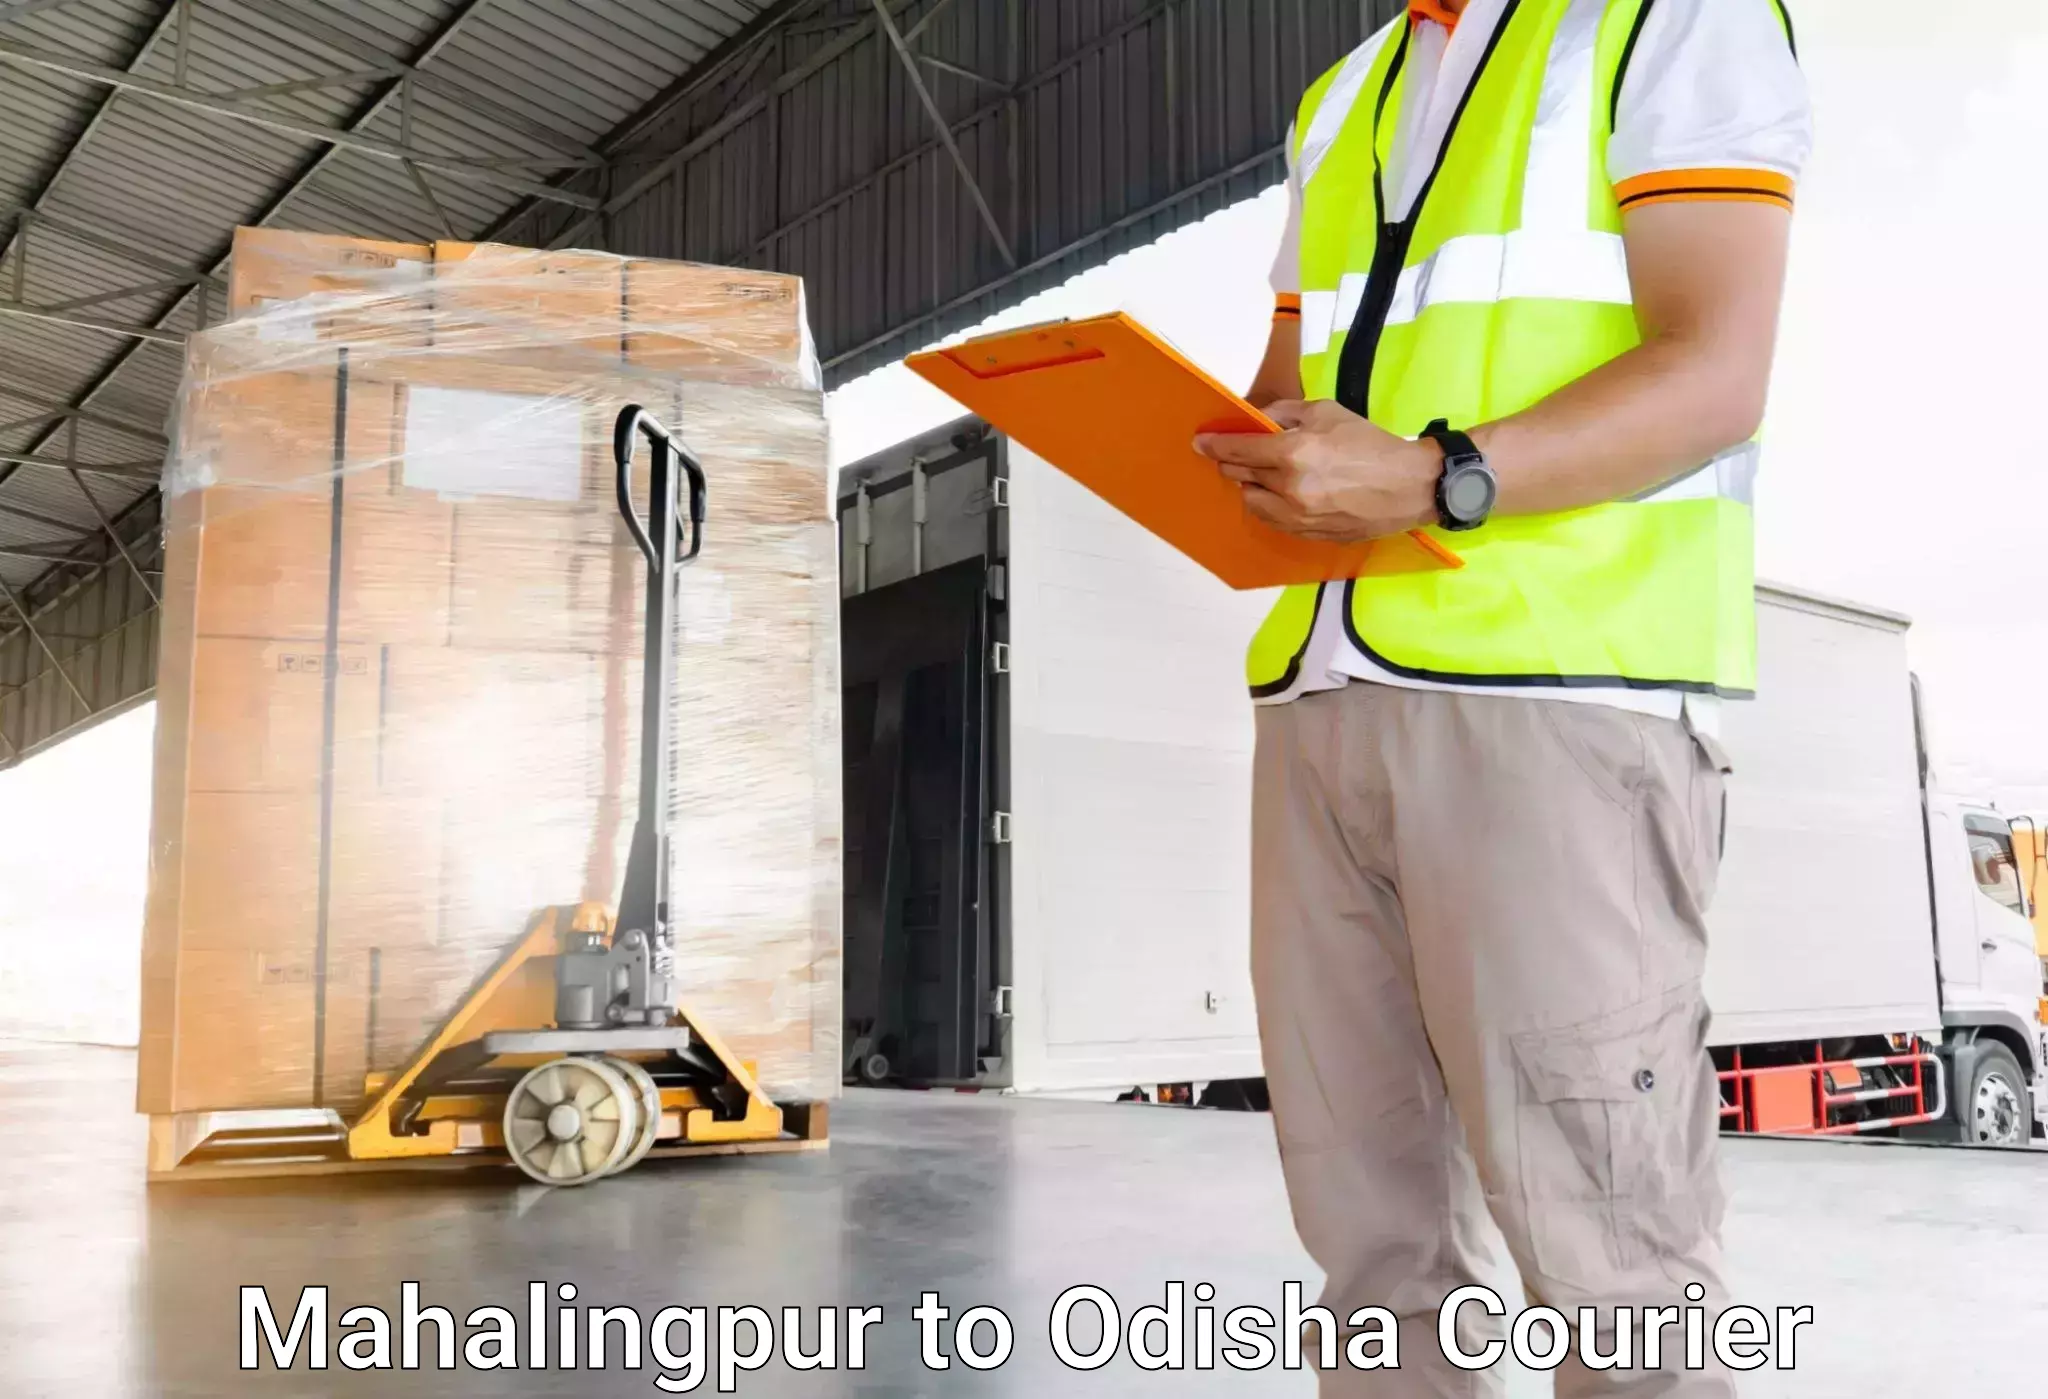 Automated luggage transport Mahalingpur to Ukhunda